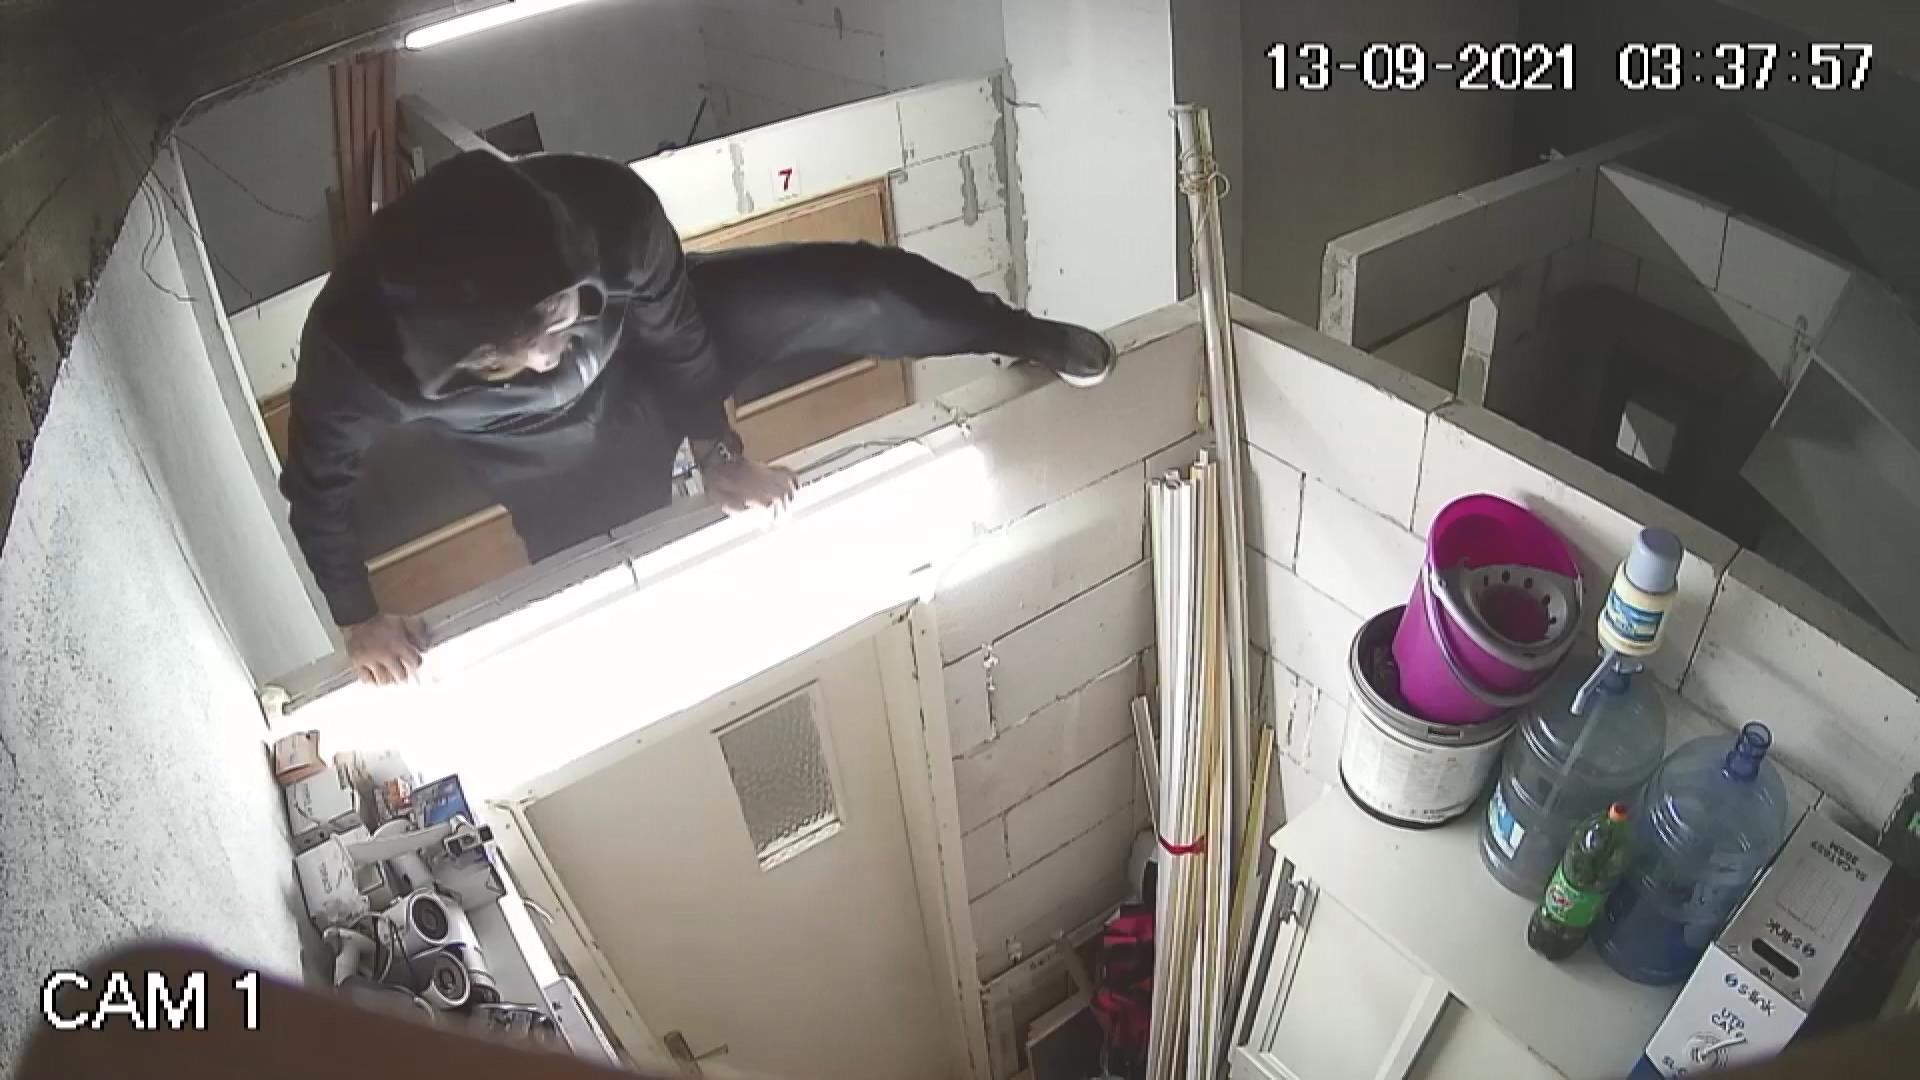 Hırsızlar, kendilerini görüntüleyen güvenlik kamerasını da çaldı